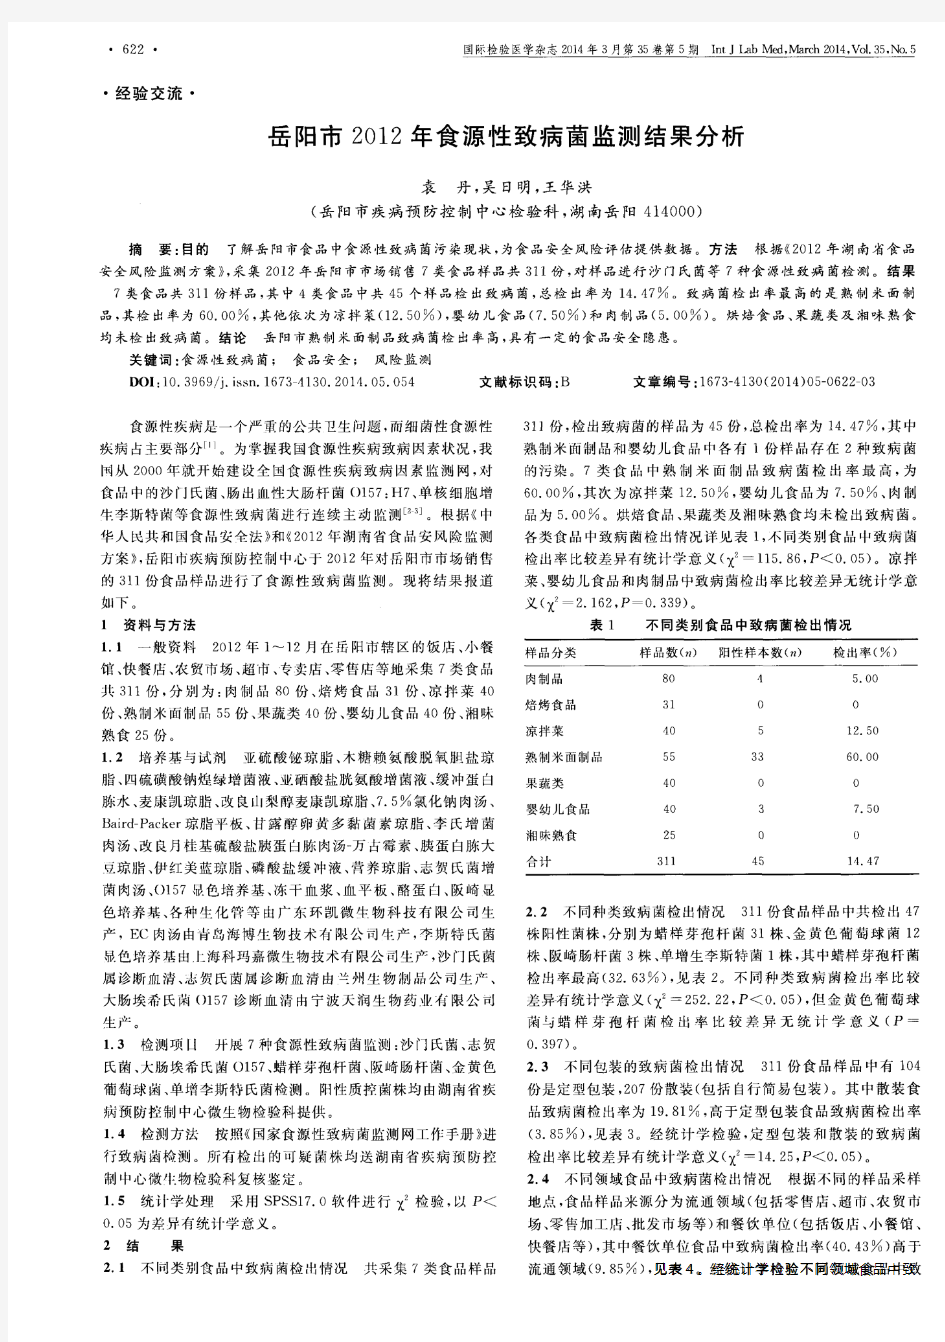 岳阳市2012年食源性致病菌监测结果分析